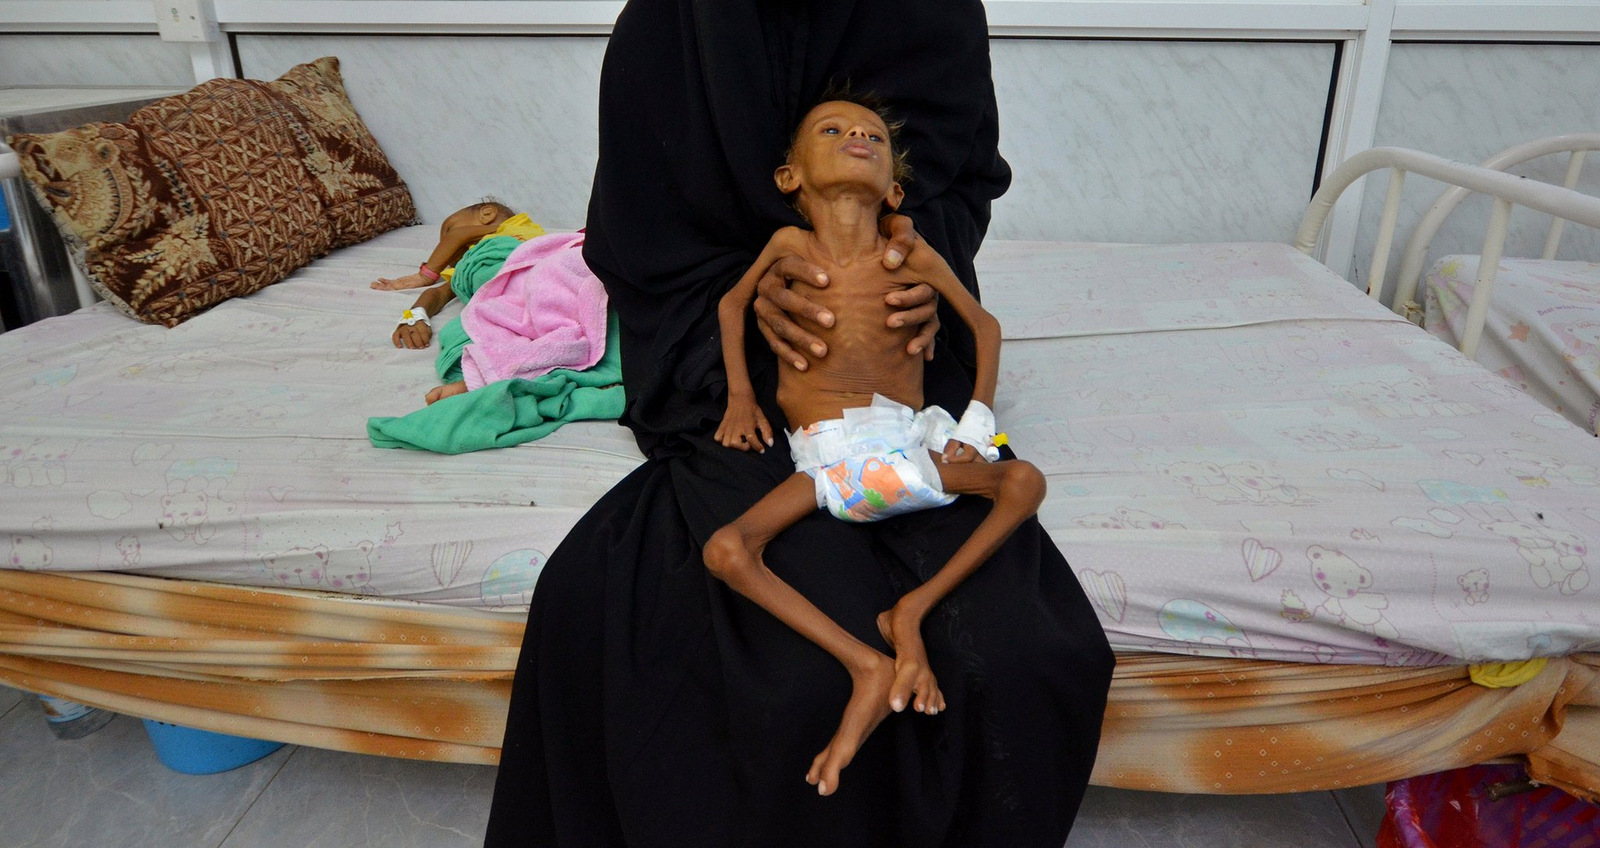 ENSZ: 18,4 millió embert fenyeget az éhhalál Jemenben az év végéig